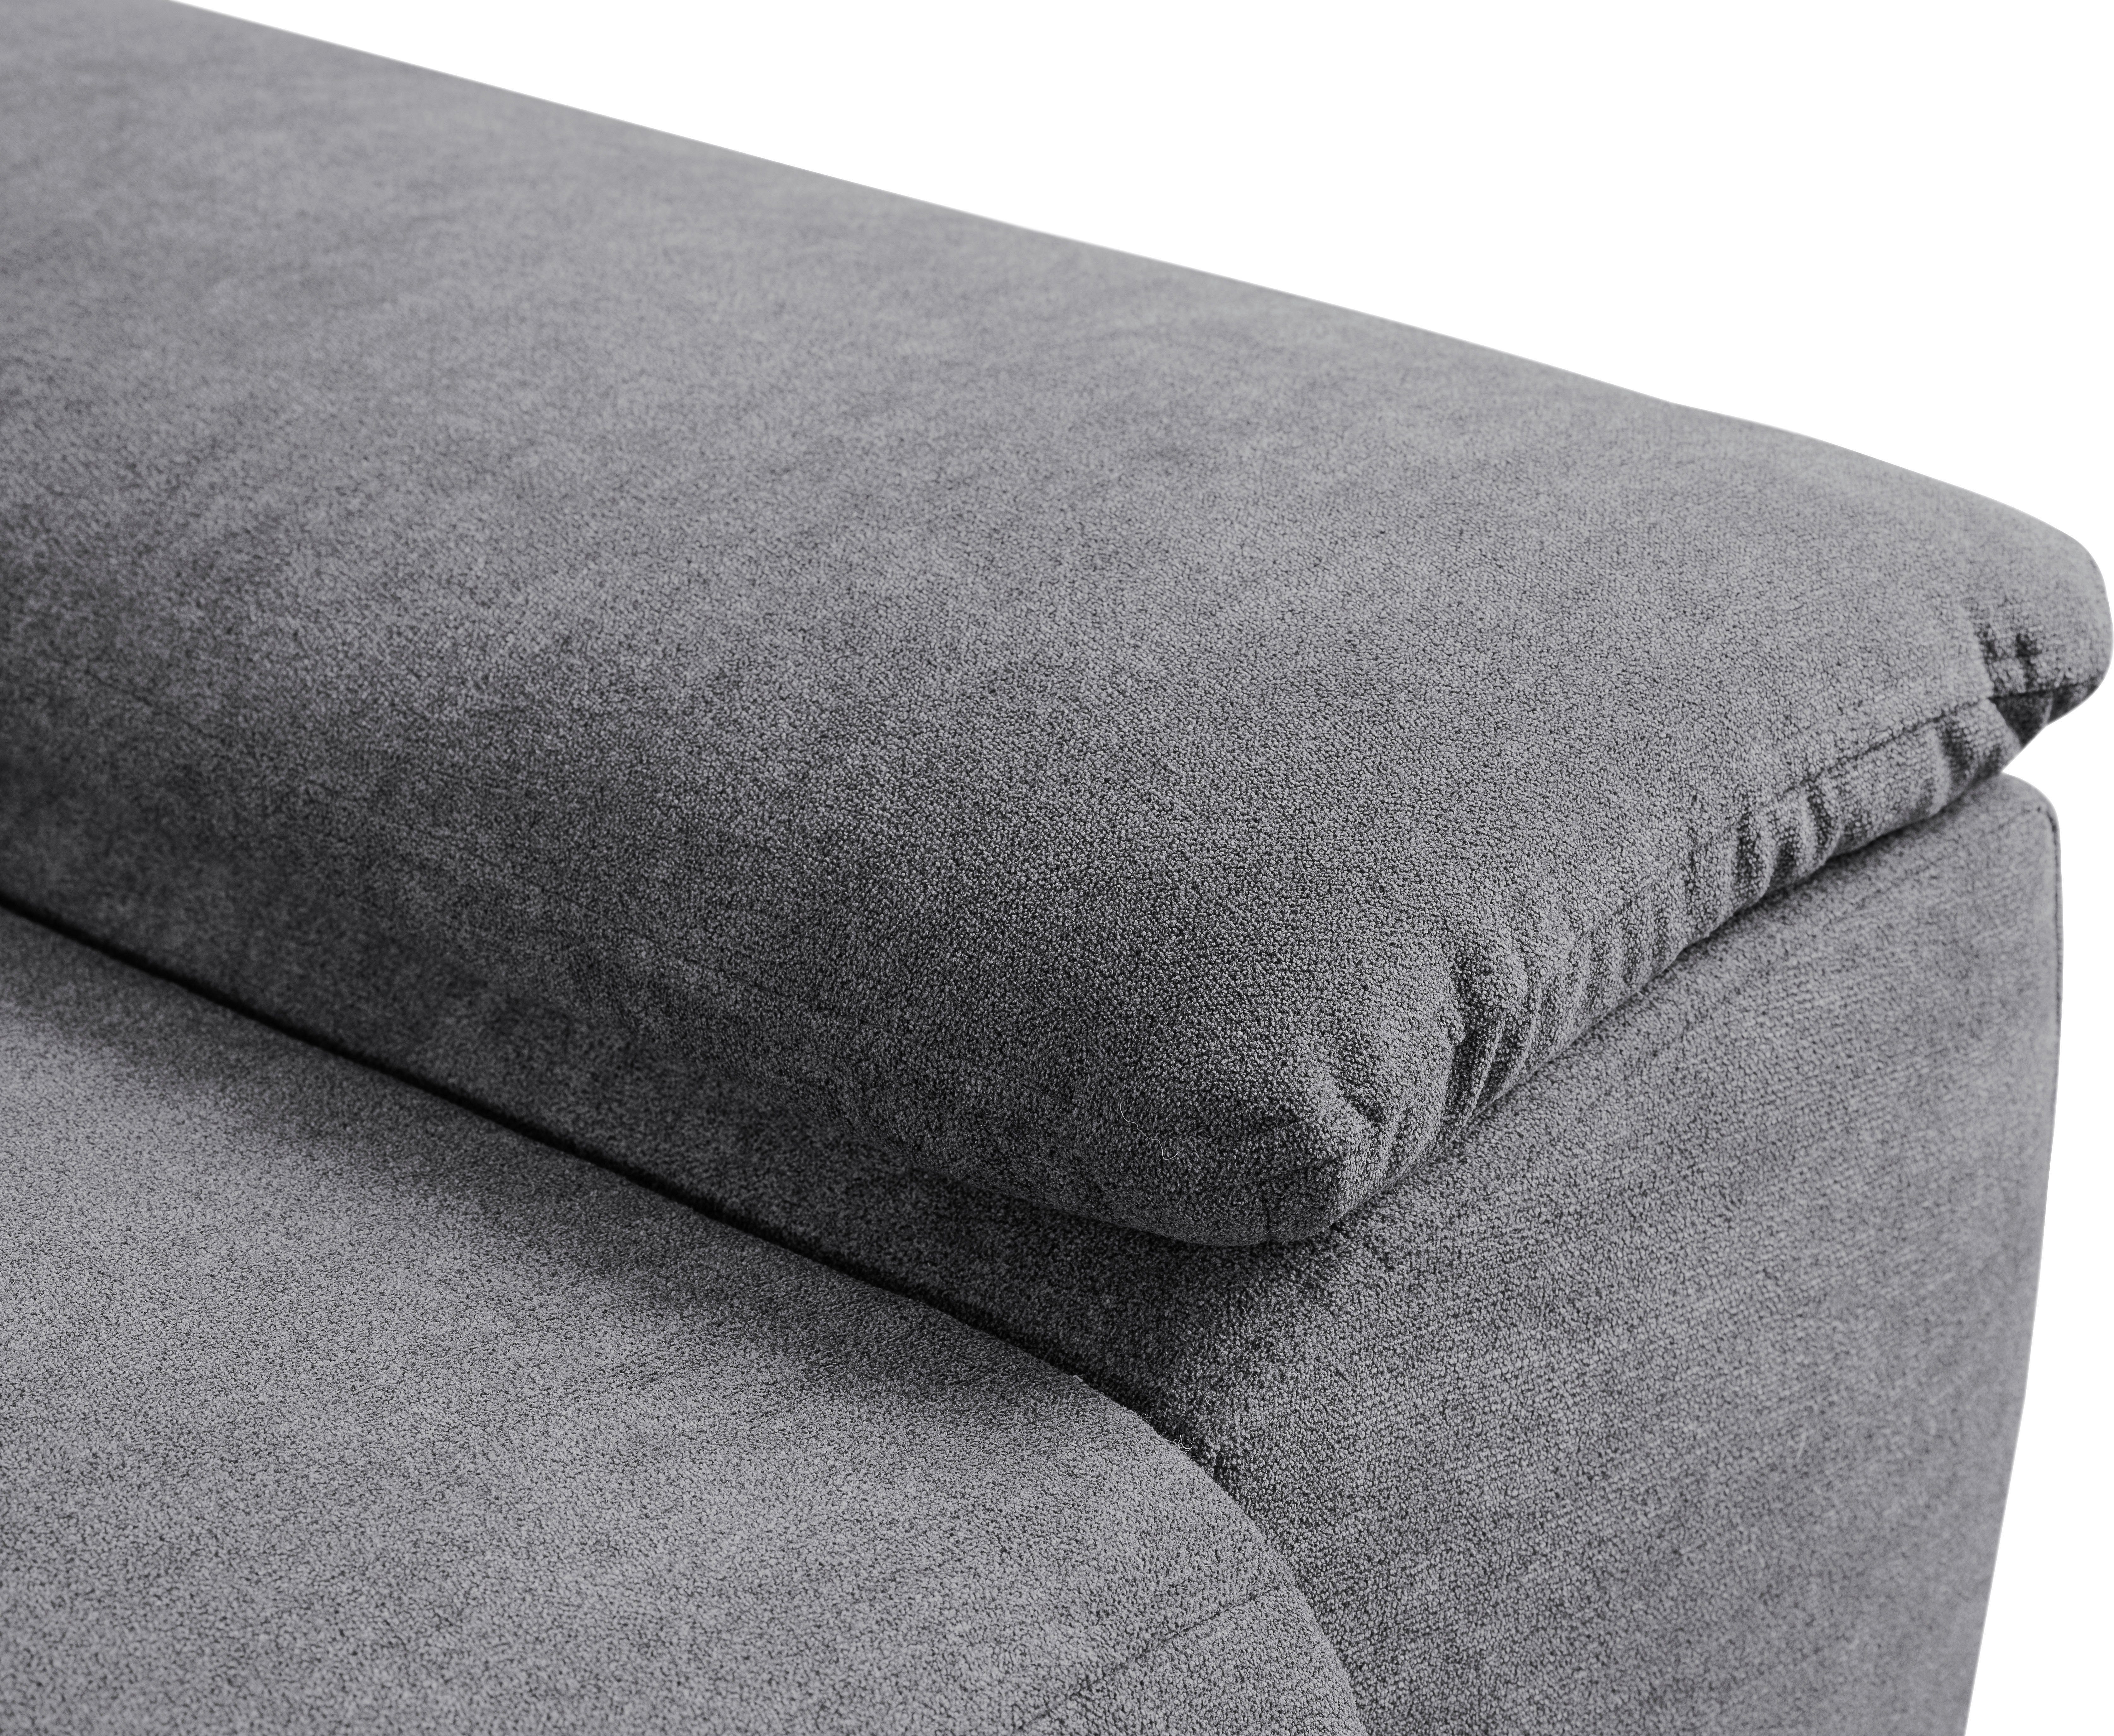 | Grau Sofa Bettkasten, Ecksofa WERK2 Grau | Panama, Kopfteile Schlaffunktion, verstellbar mit Modernes Grau